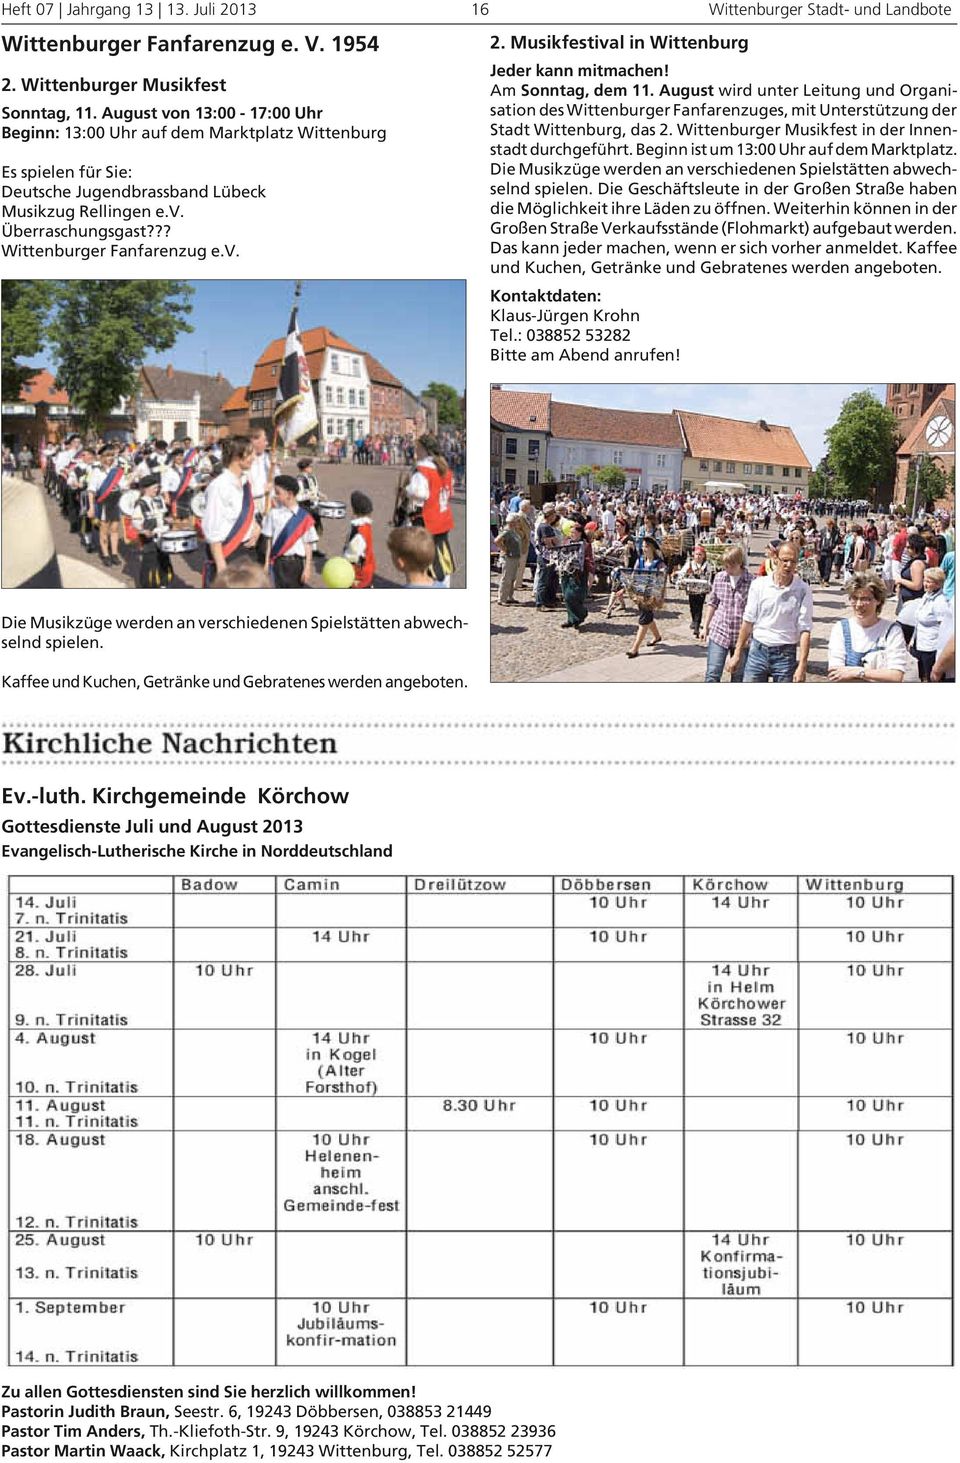 v. 2. Musikfestival in Wittenburg Jeder kann mitmachen! Am Sonntag, dem 11. August wird unter Leitung und Organisation des Wittenburger Fanfarenzuges, mit Unterstützung der Stadt Wittenburg, das 2.